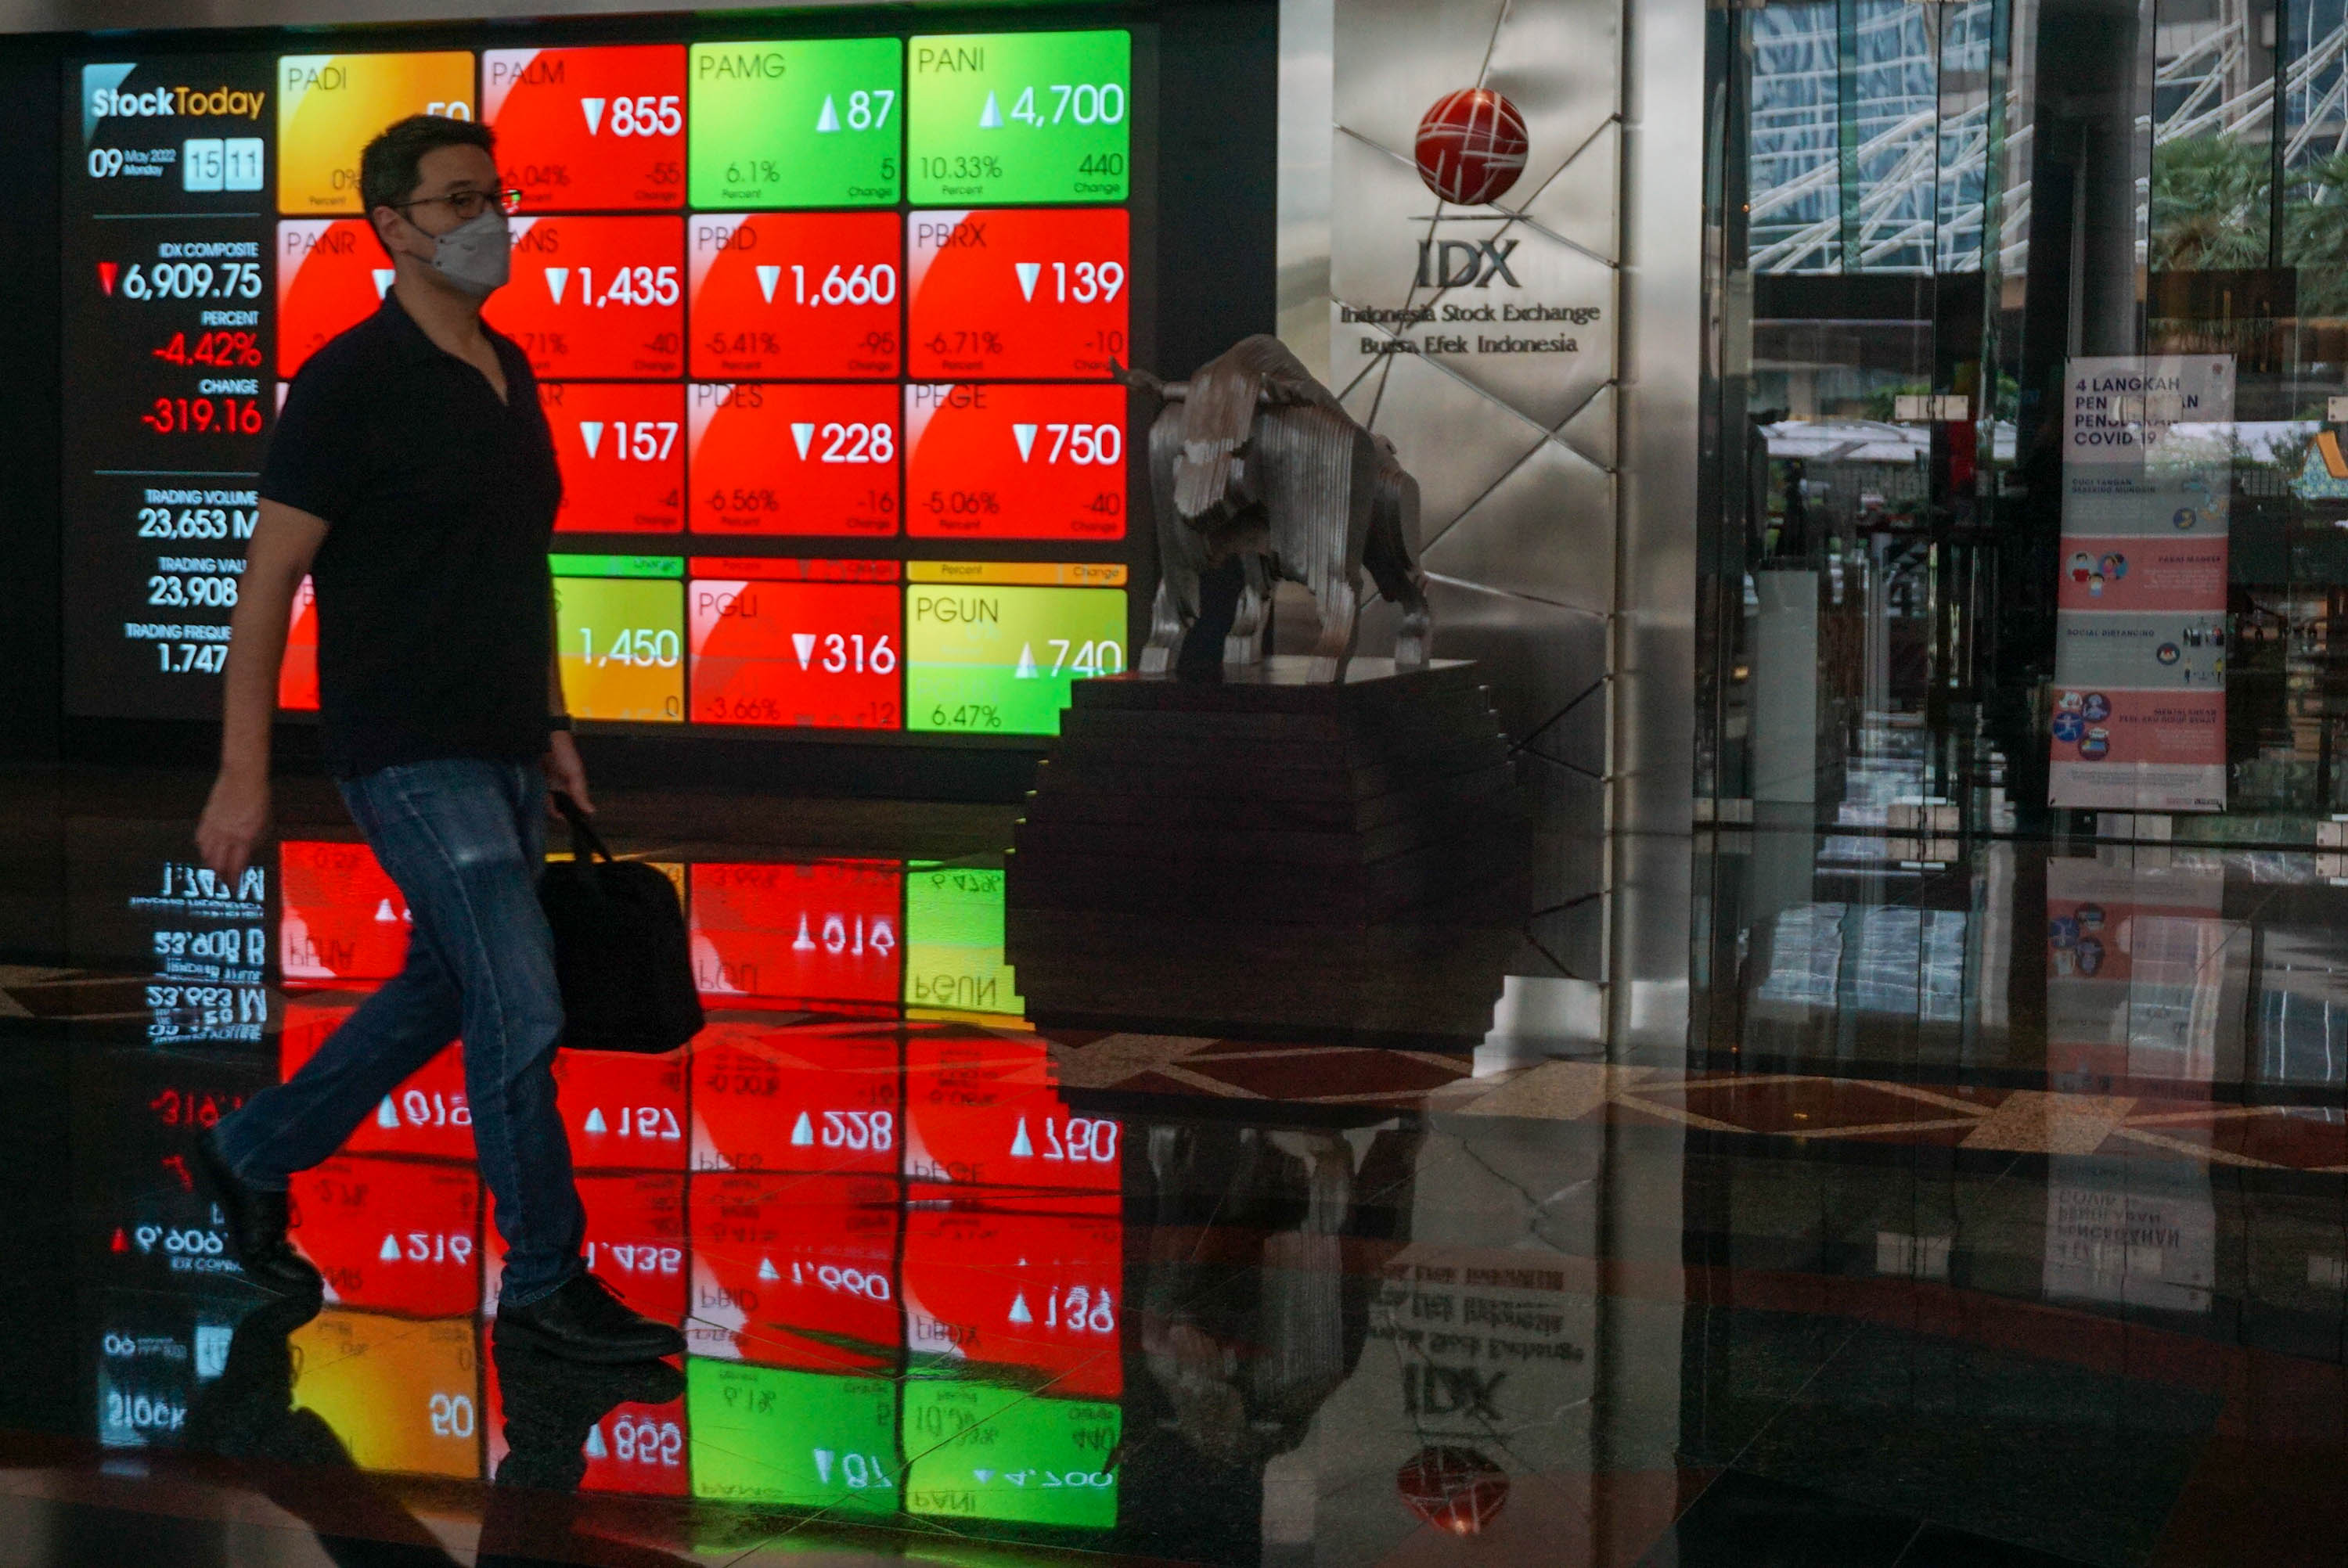 Karyawan melintas di depan layar pergerakan indeks harga saham gabungan (IHSG) di gedung Bursa Efek Indonesia (BEI) Jakarta, Senin, 9 Mei 2022. Foto: Ismail Pohan/TrenAsia